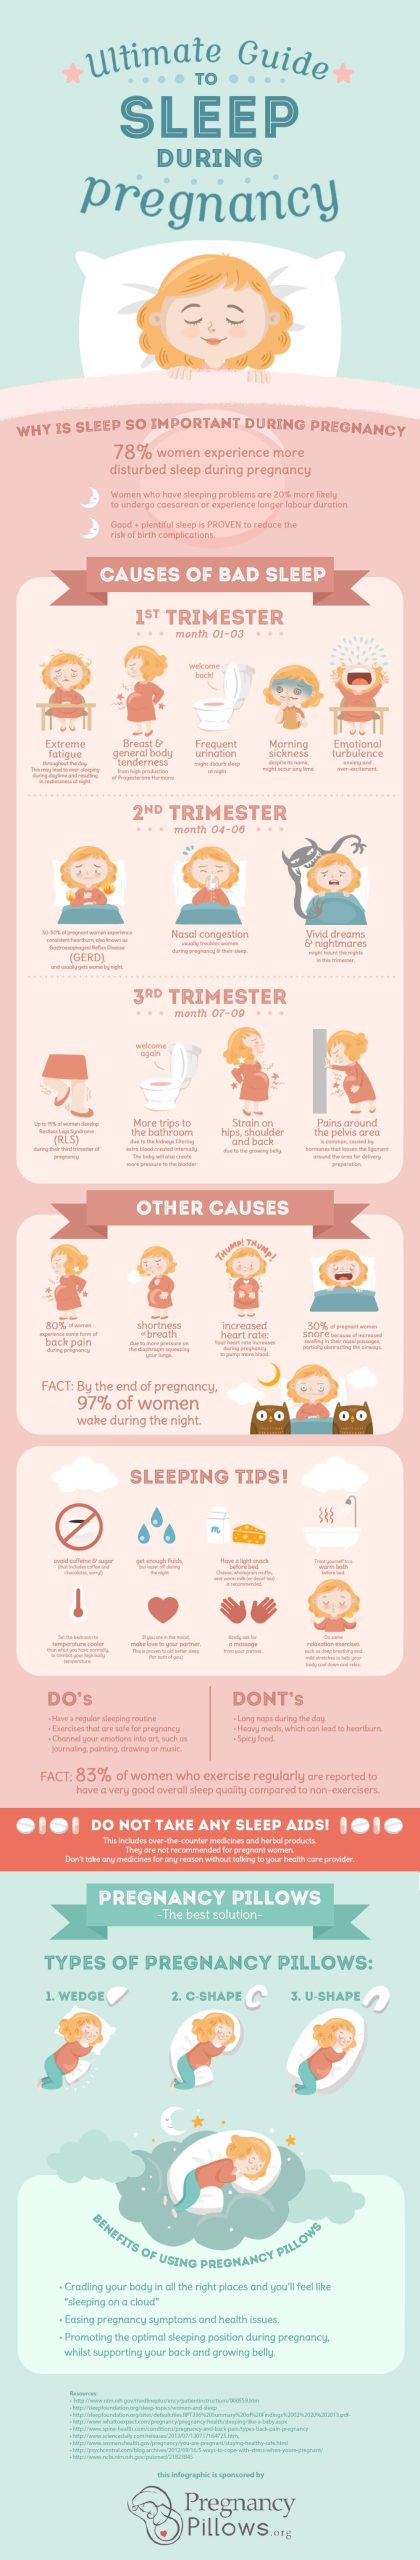 pregnancy sleep infographic